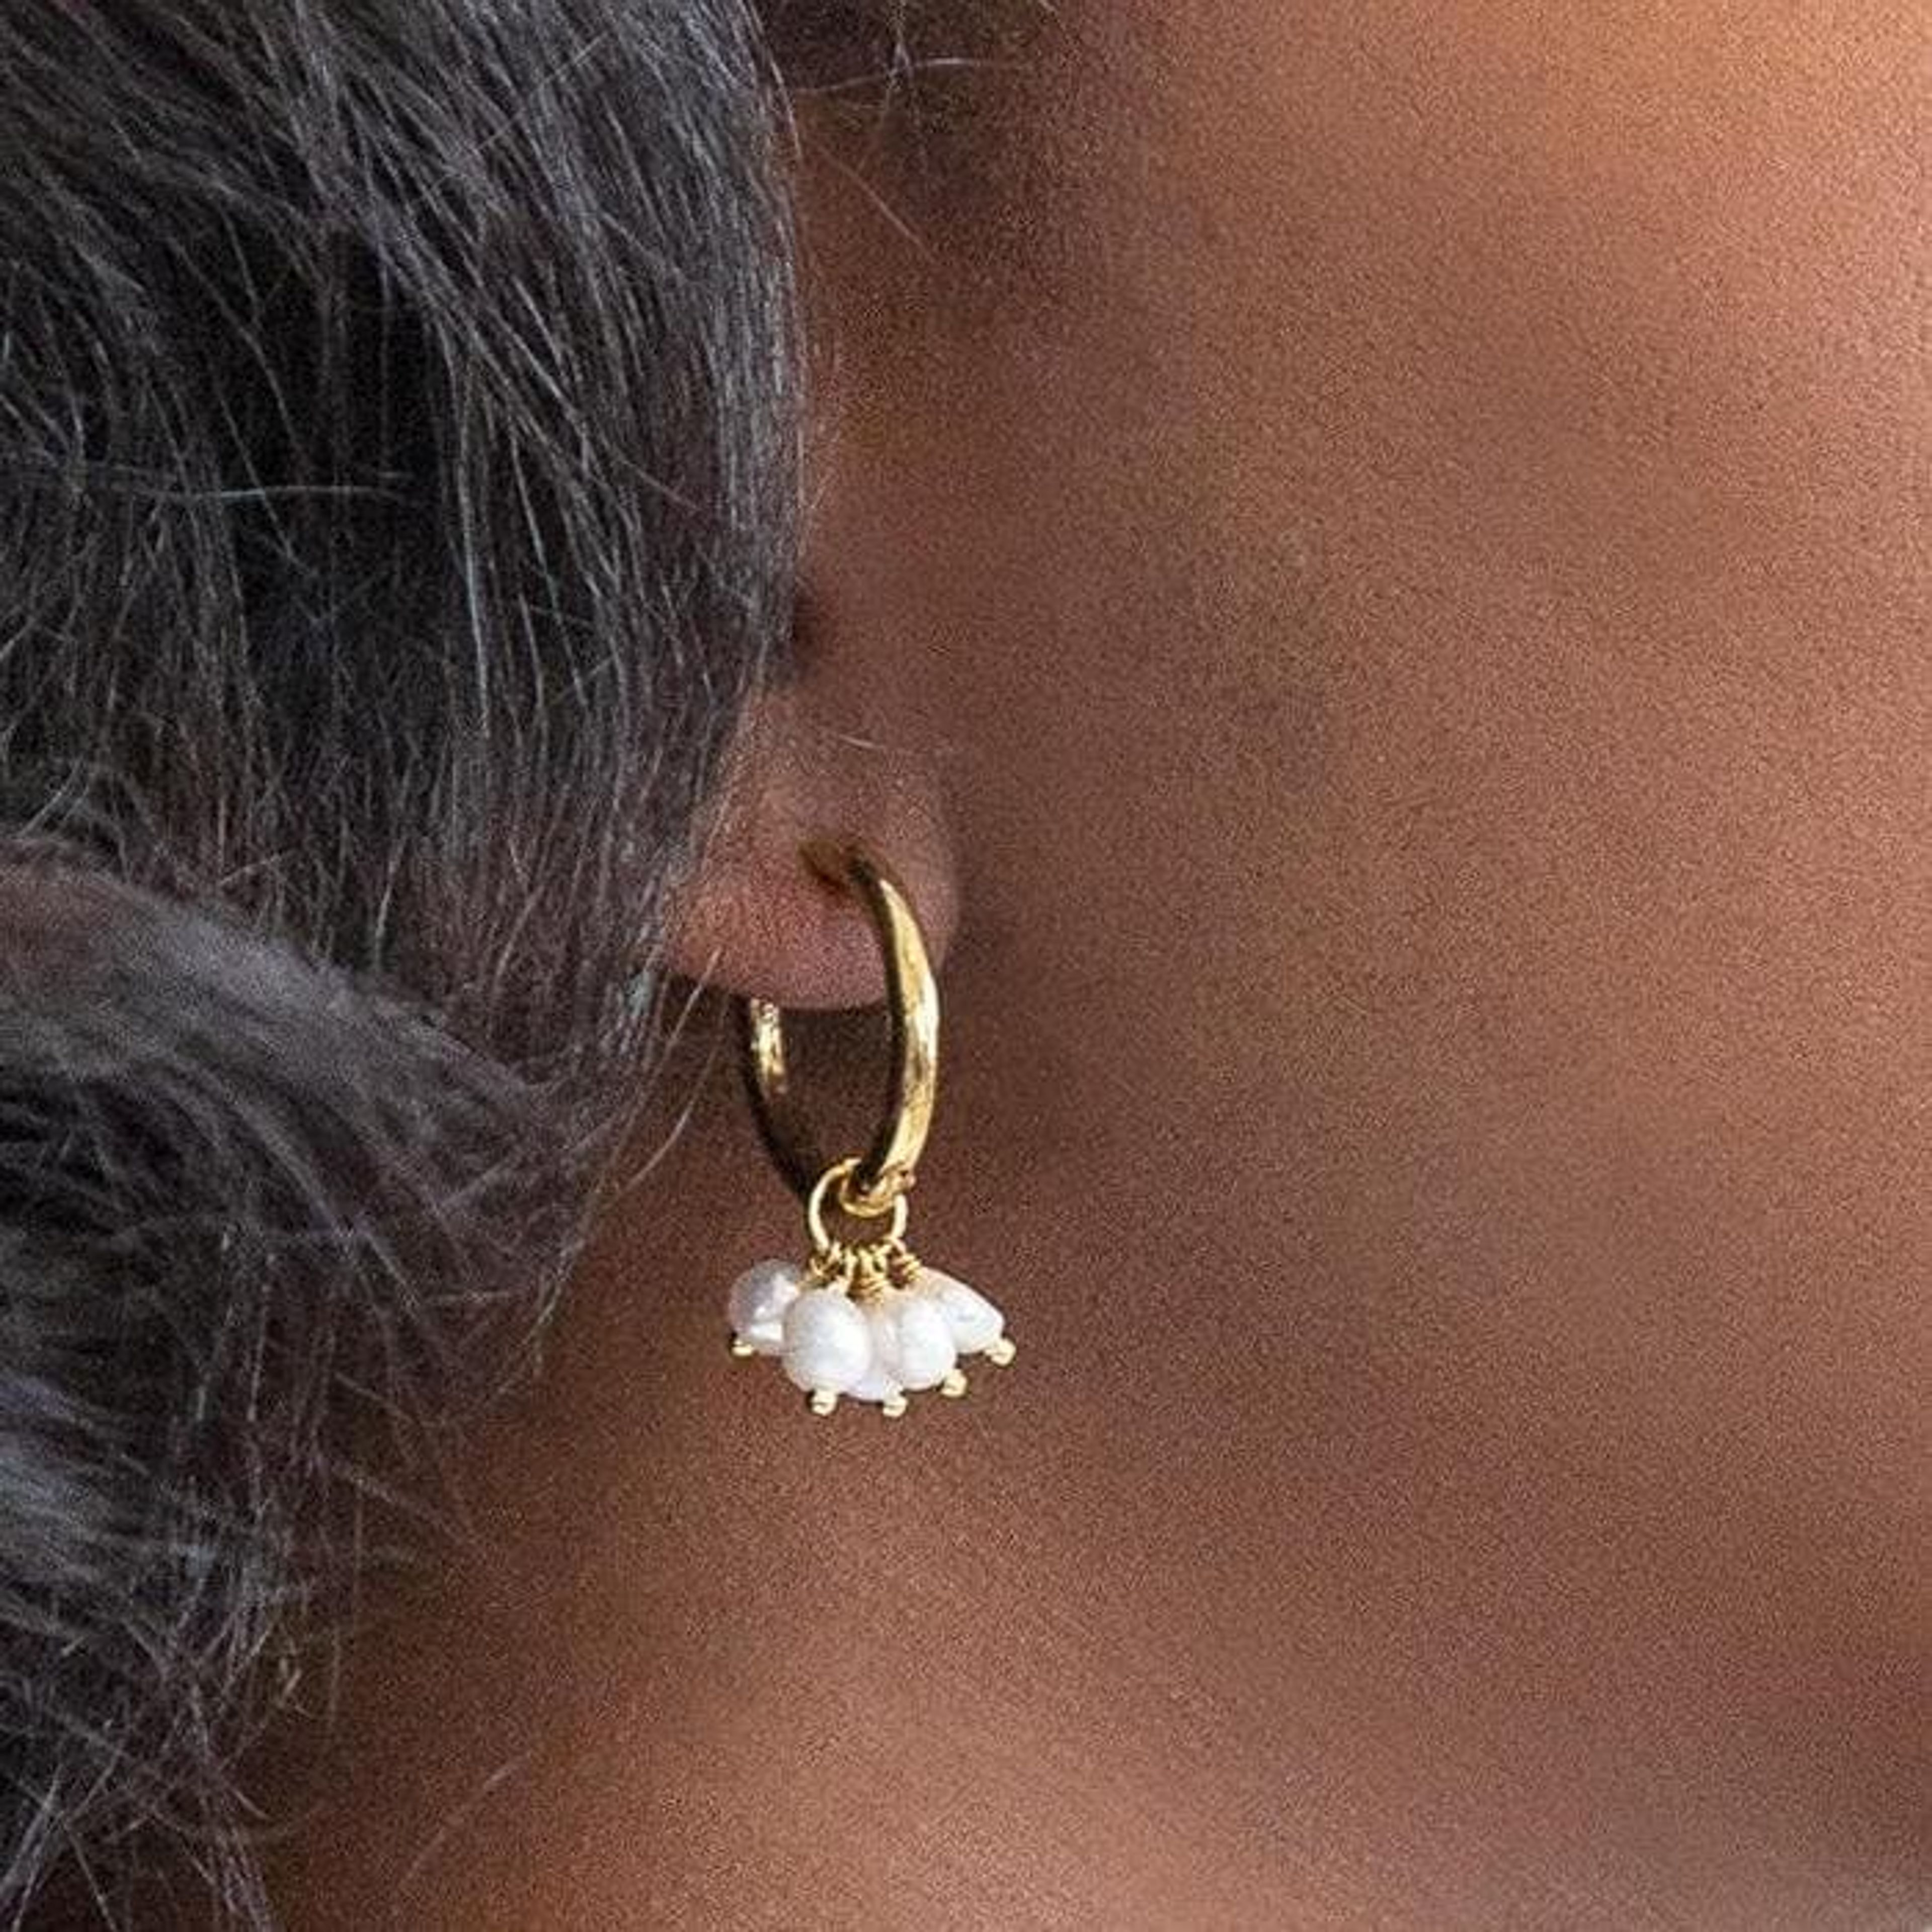 Gold Pearl Huggie Earrings - Best Seller